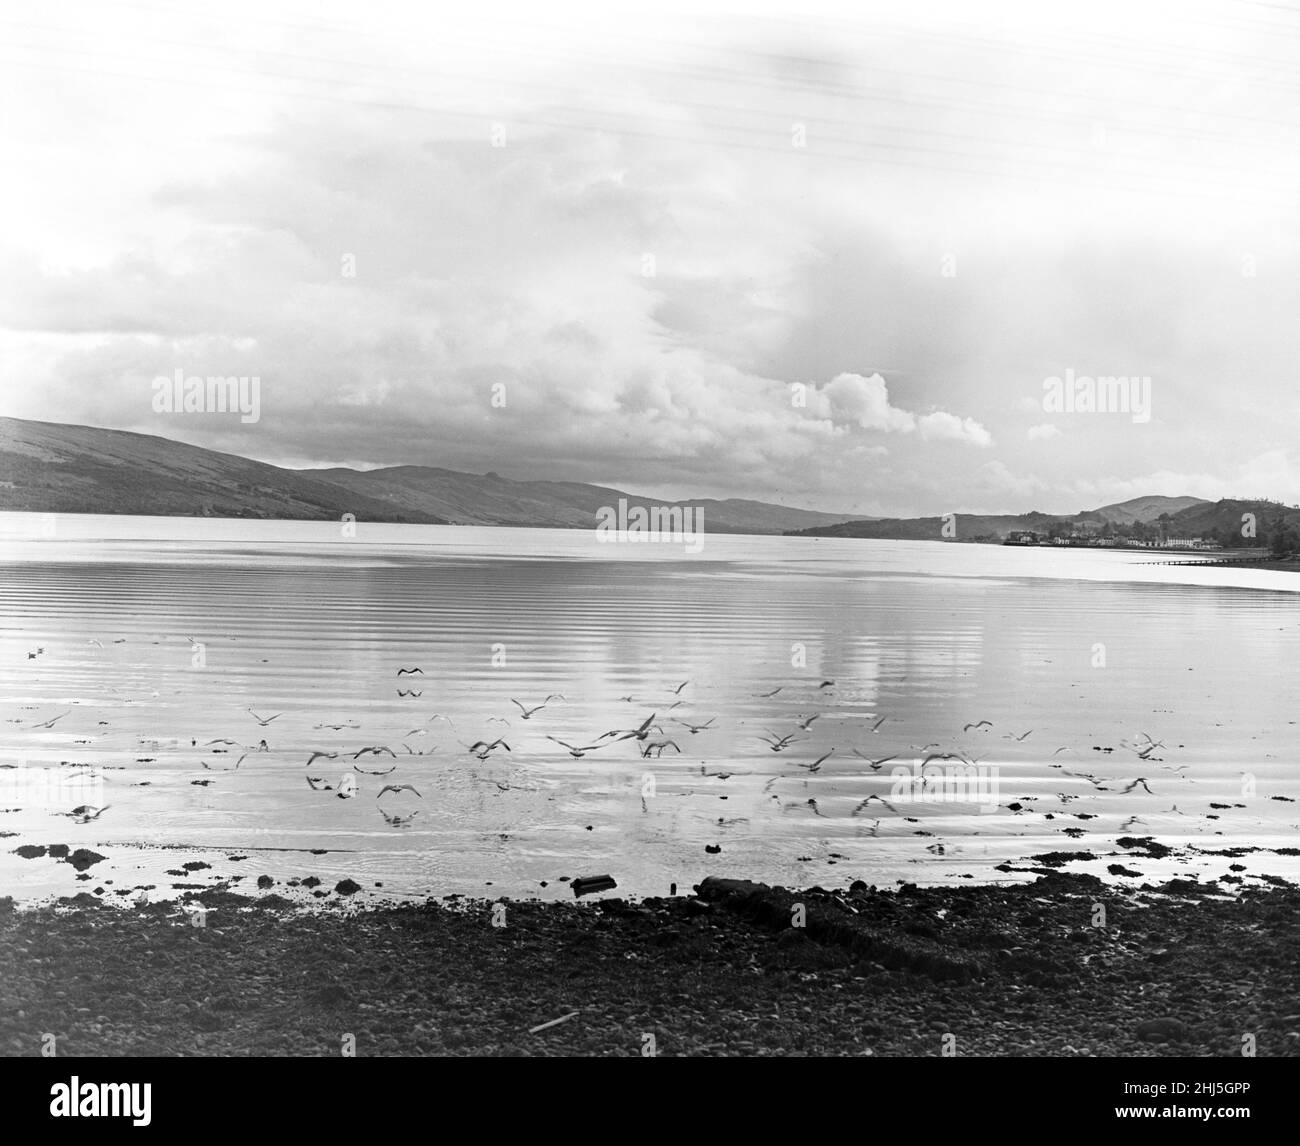 Gli uccelli marini sono l'unico segno di vita mentre si librano sopra le corrugate come le acque di Loch Fyne in cerca della loro cena. Presto cadrà l'oscurità, ma in questo studio eventide la vastità, la quiete e la calma perfetta così tradizionale della Scozia è stata catturata. Loch Fyne, Argyll e Bute, Scozia. Novembre 1956. Foto Stock